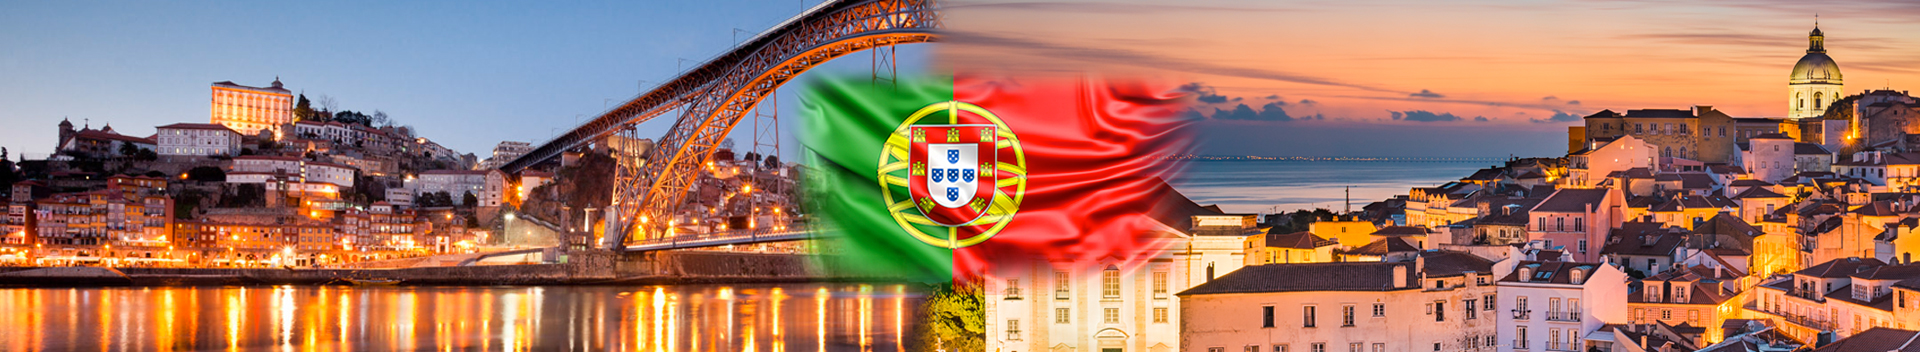 Portekiz’e vize kaç günde çıkar